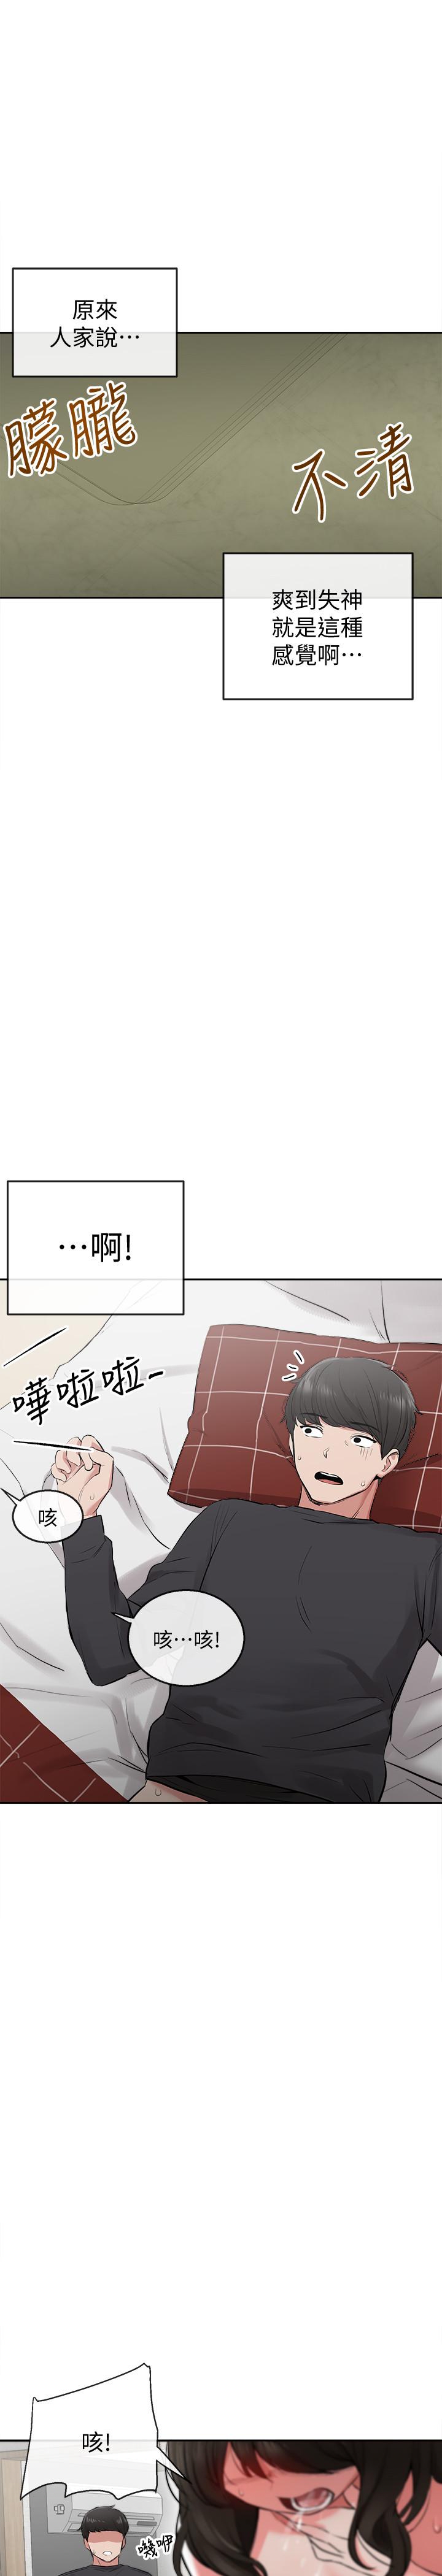 韩国污漫画 深夜噪音 第3话-体验邻居的热情 31